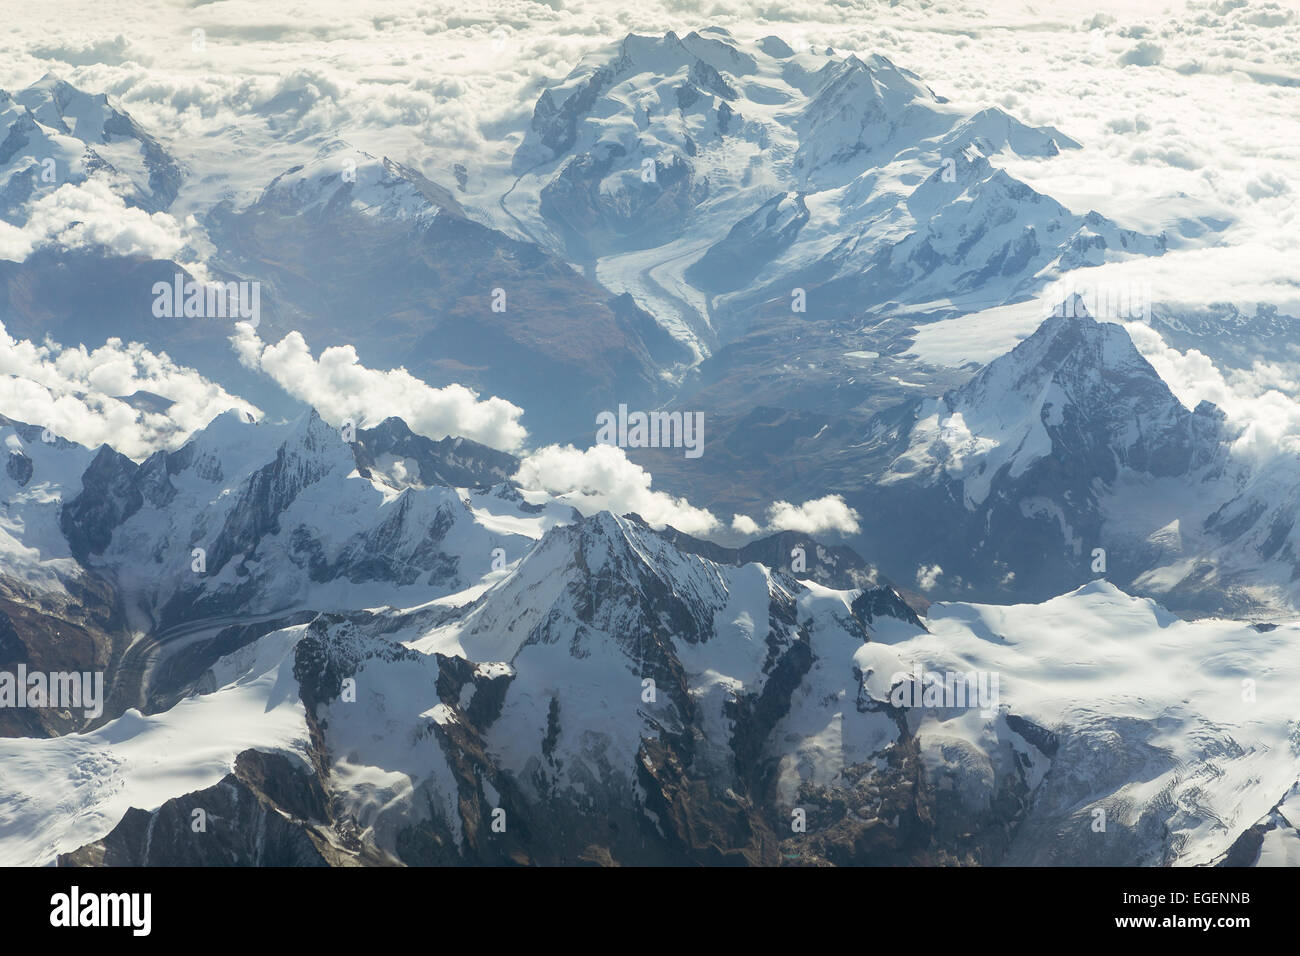 Vue aérienne des Alpes valaisannes avec les montagnes Dent Blanche, le Cervin, le sommet du Monte Rosa et Dufourspitze Gorner Banque D'Images